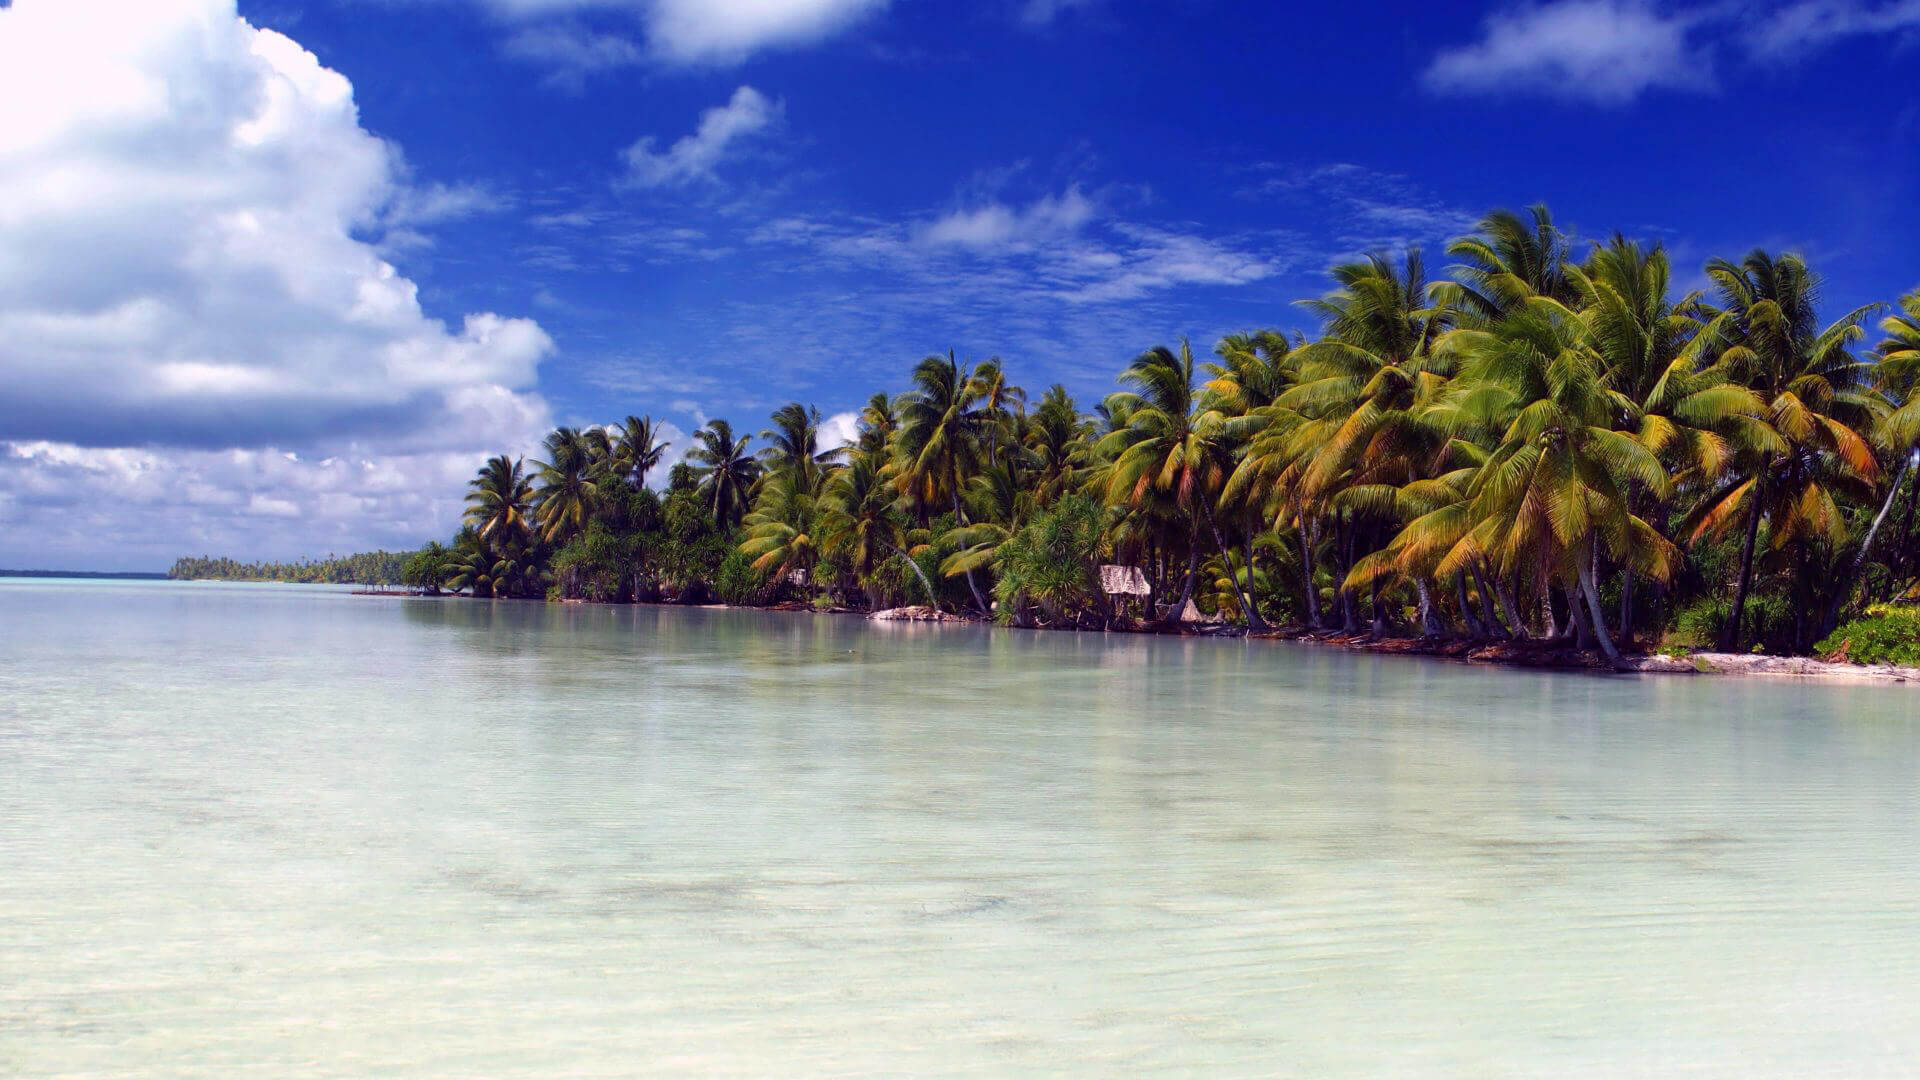 Panduan perjalanan Kiribati - Pembantu Perjalanan S